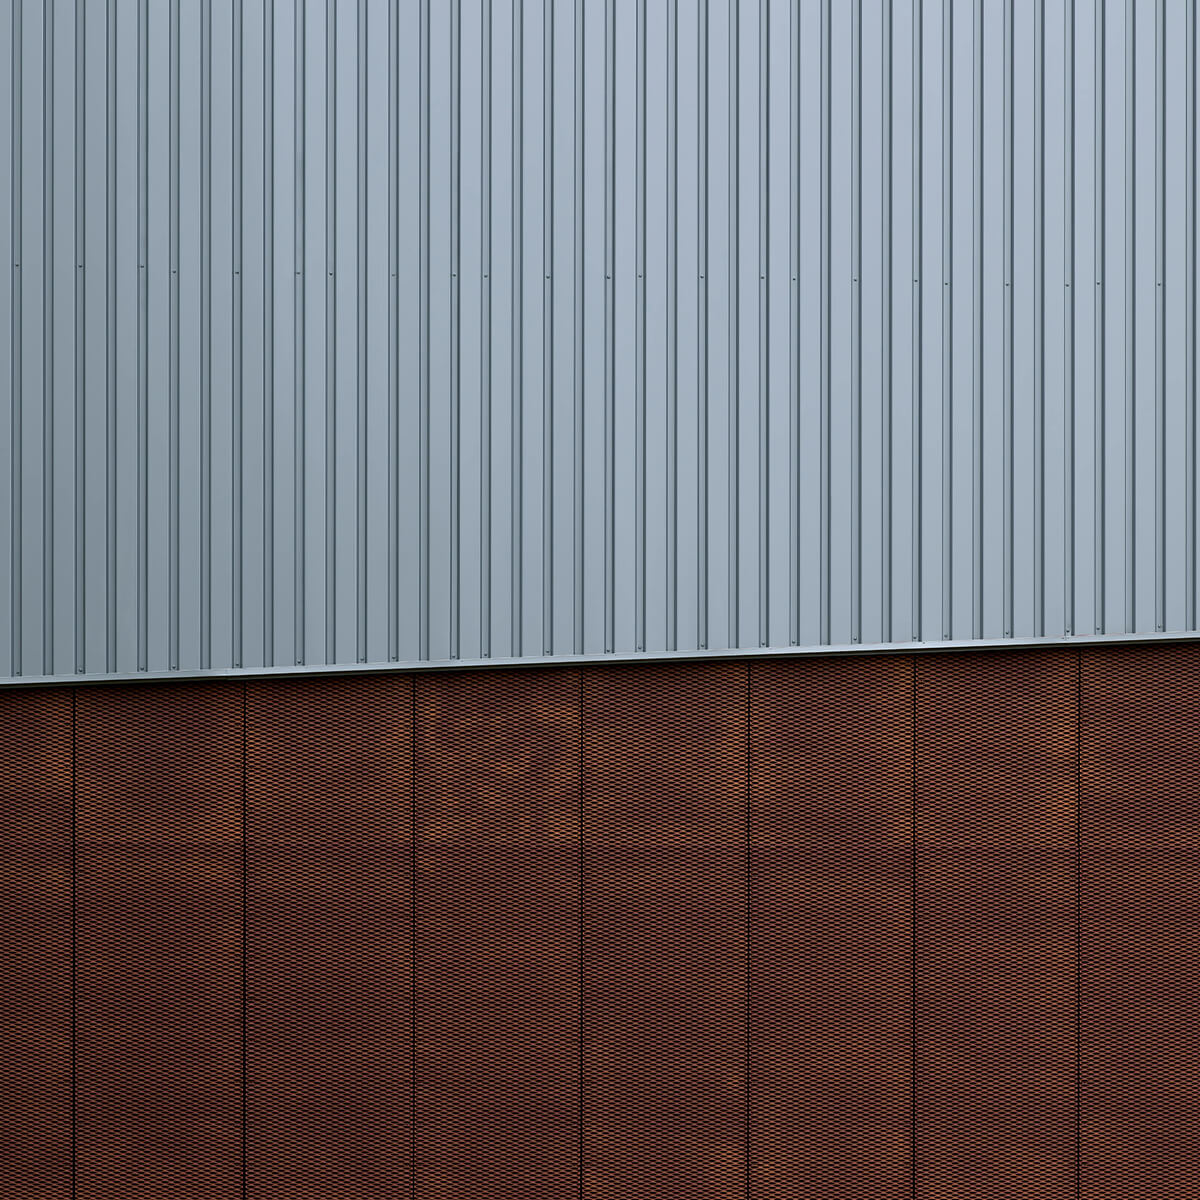 Treillis métallique avec profils en U de couleur argentée